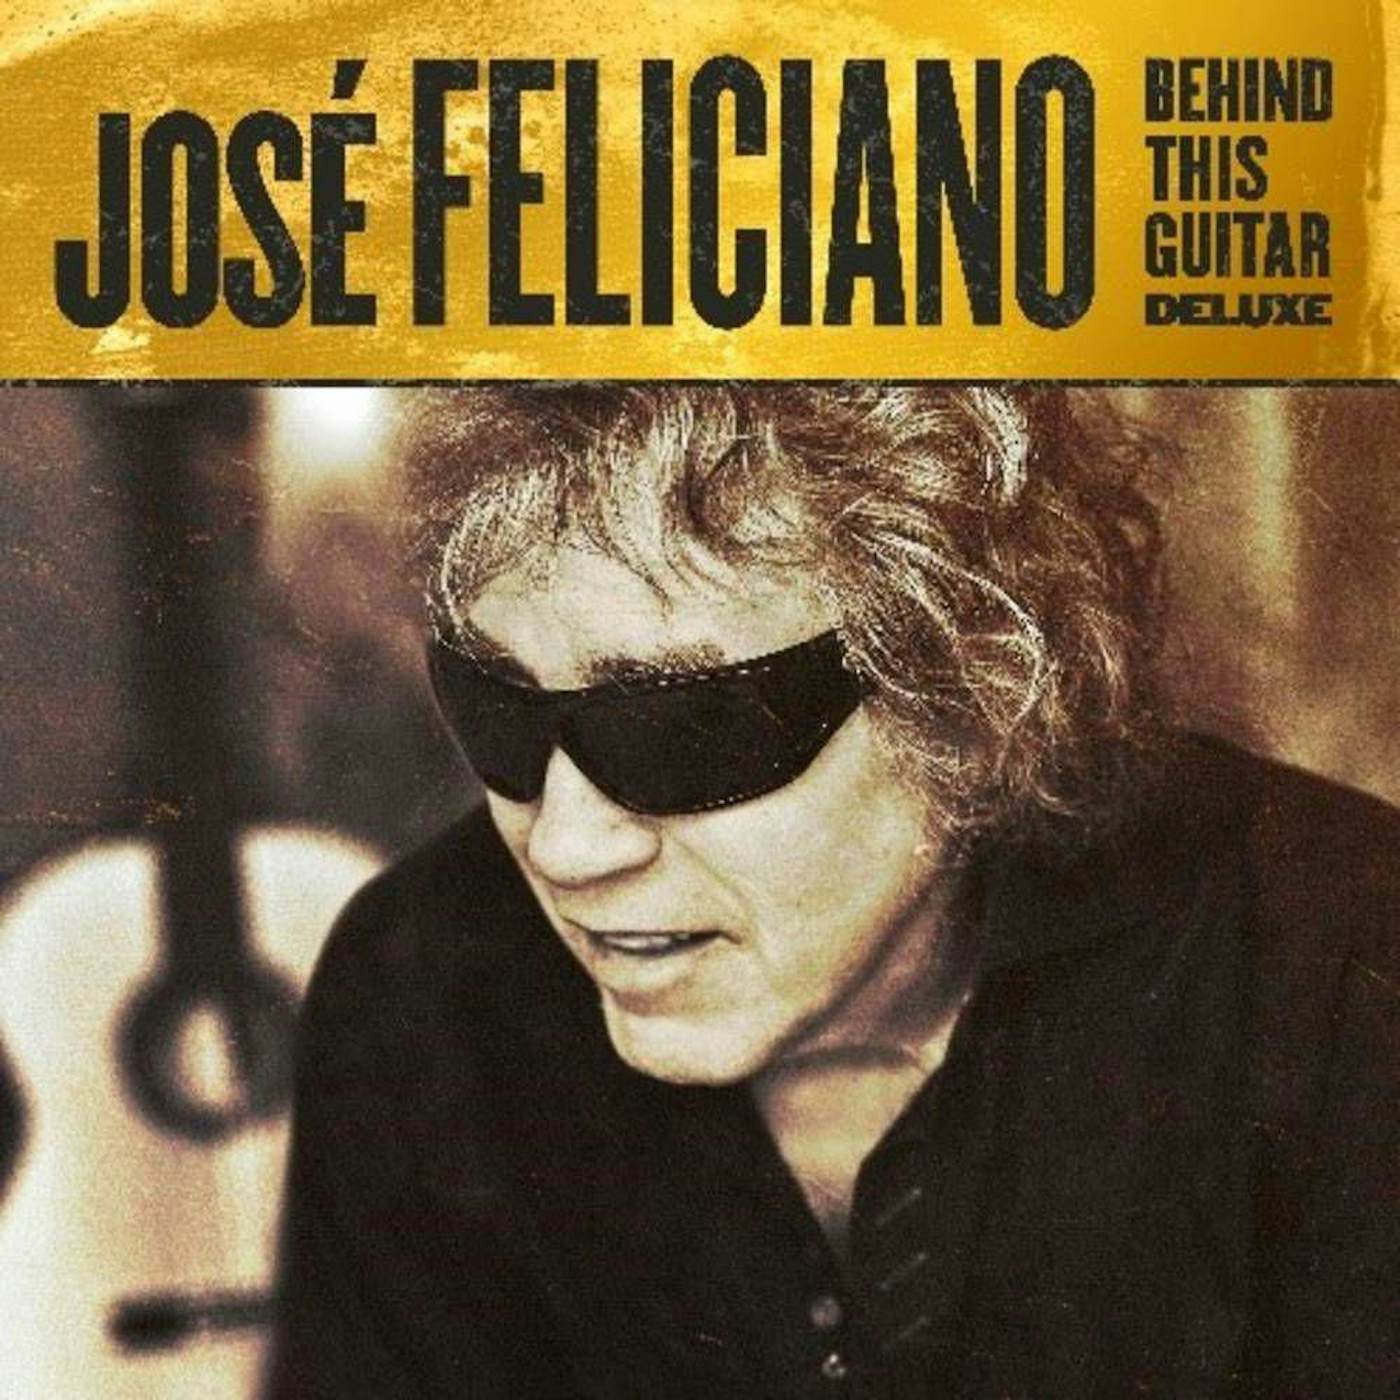 José Feliciano Behind This Guitar (Deluxe) Vinyl Record